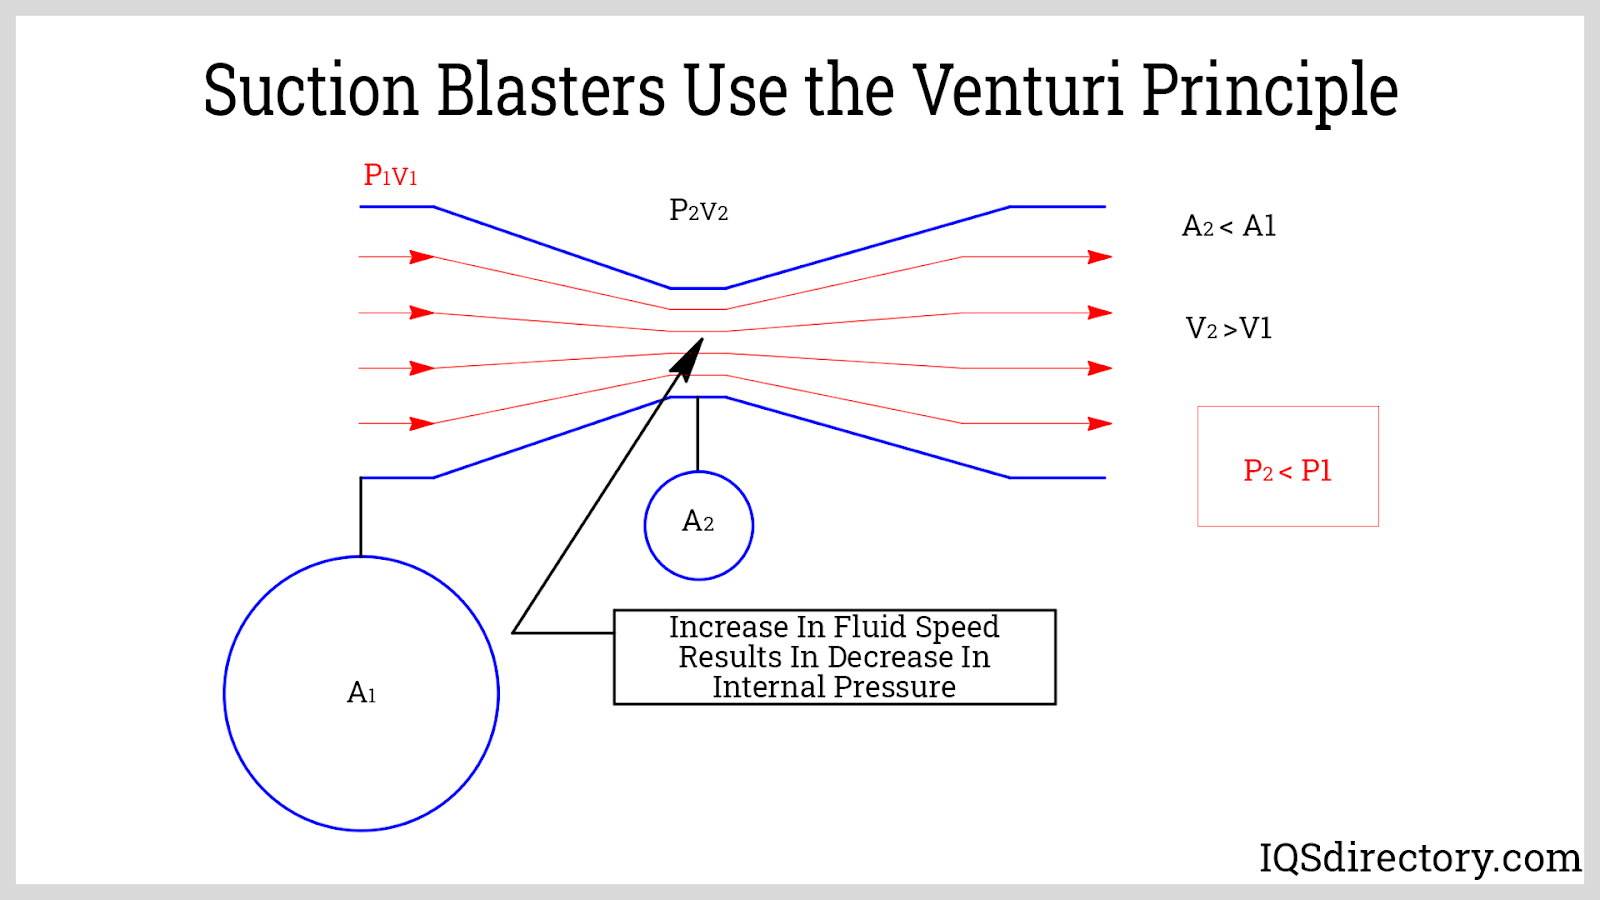 Suction Blasters Use the Venturi Principle